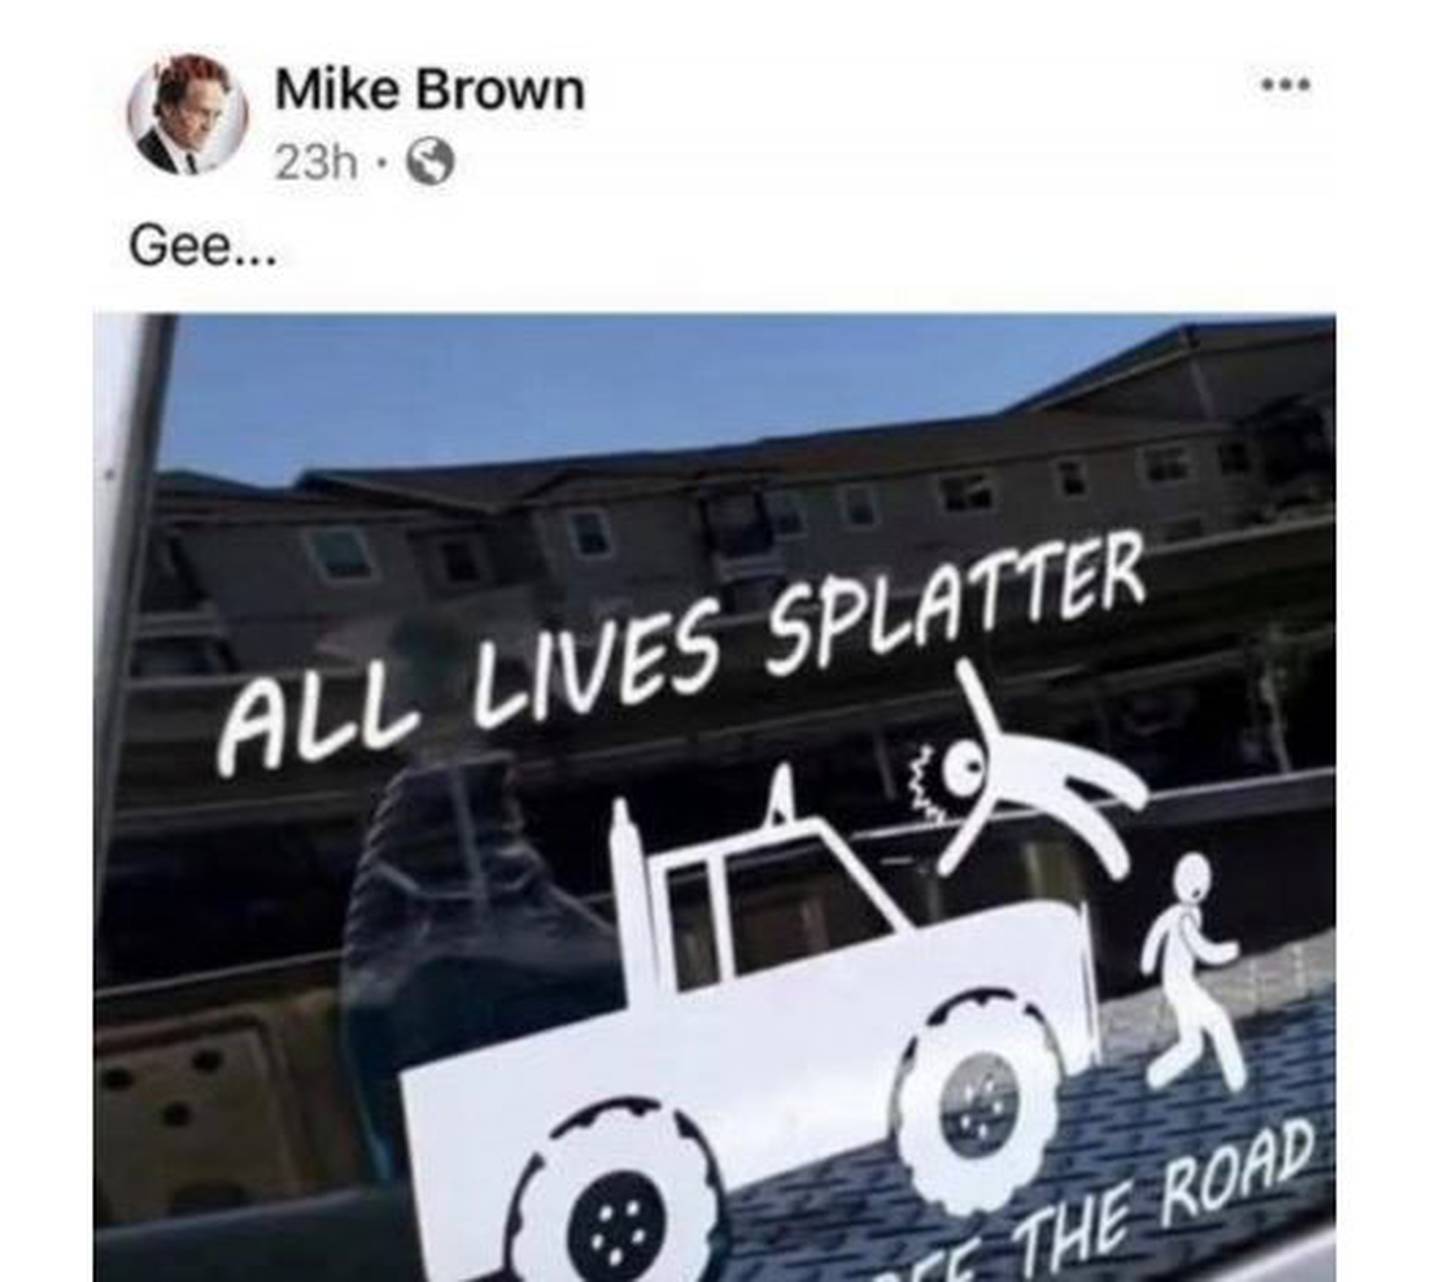 Screen shot of Mike Brown's social media post